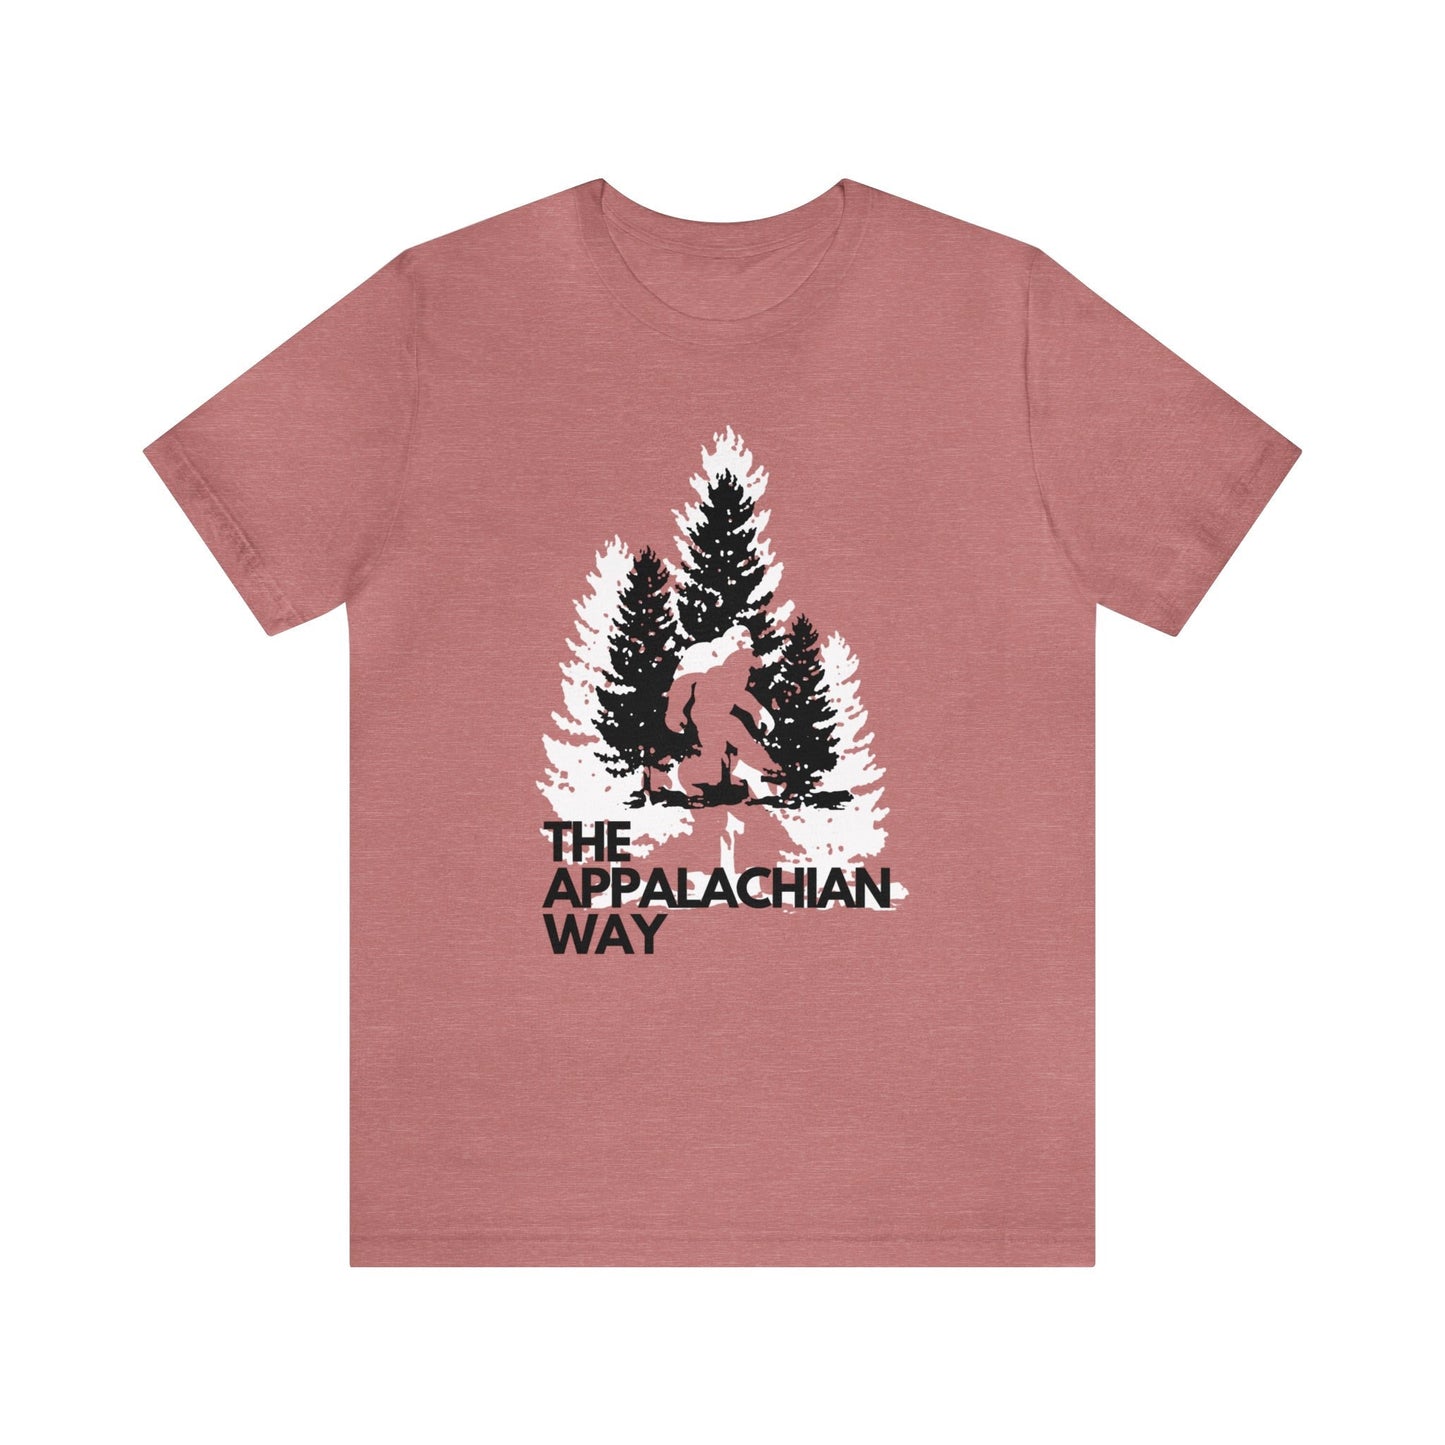 Bigfoot Sasquatch in Trees The Appalachian Way T-shirt |Bigfoot Shirt, Sasquatch Shirt, Funny Bigfoot Shirt, Hiking shirt, gifts for him